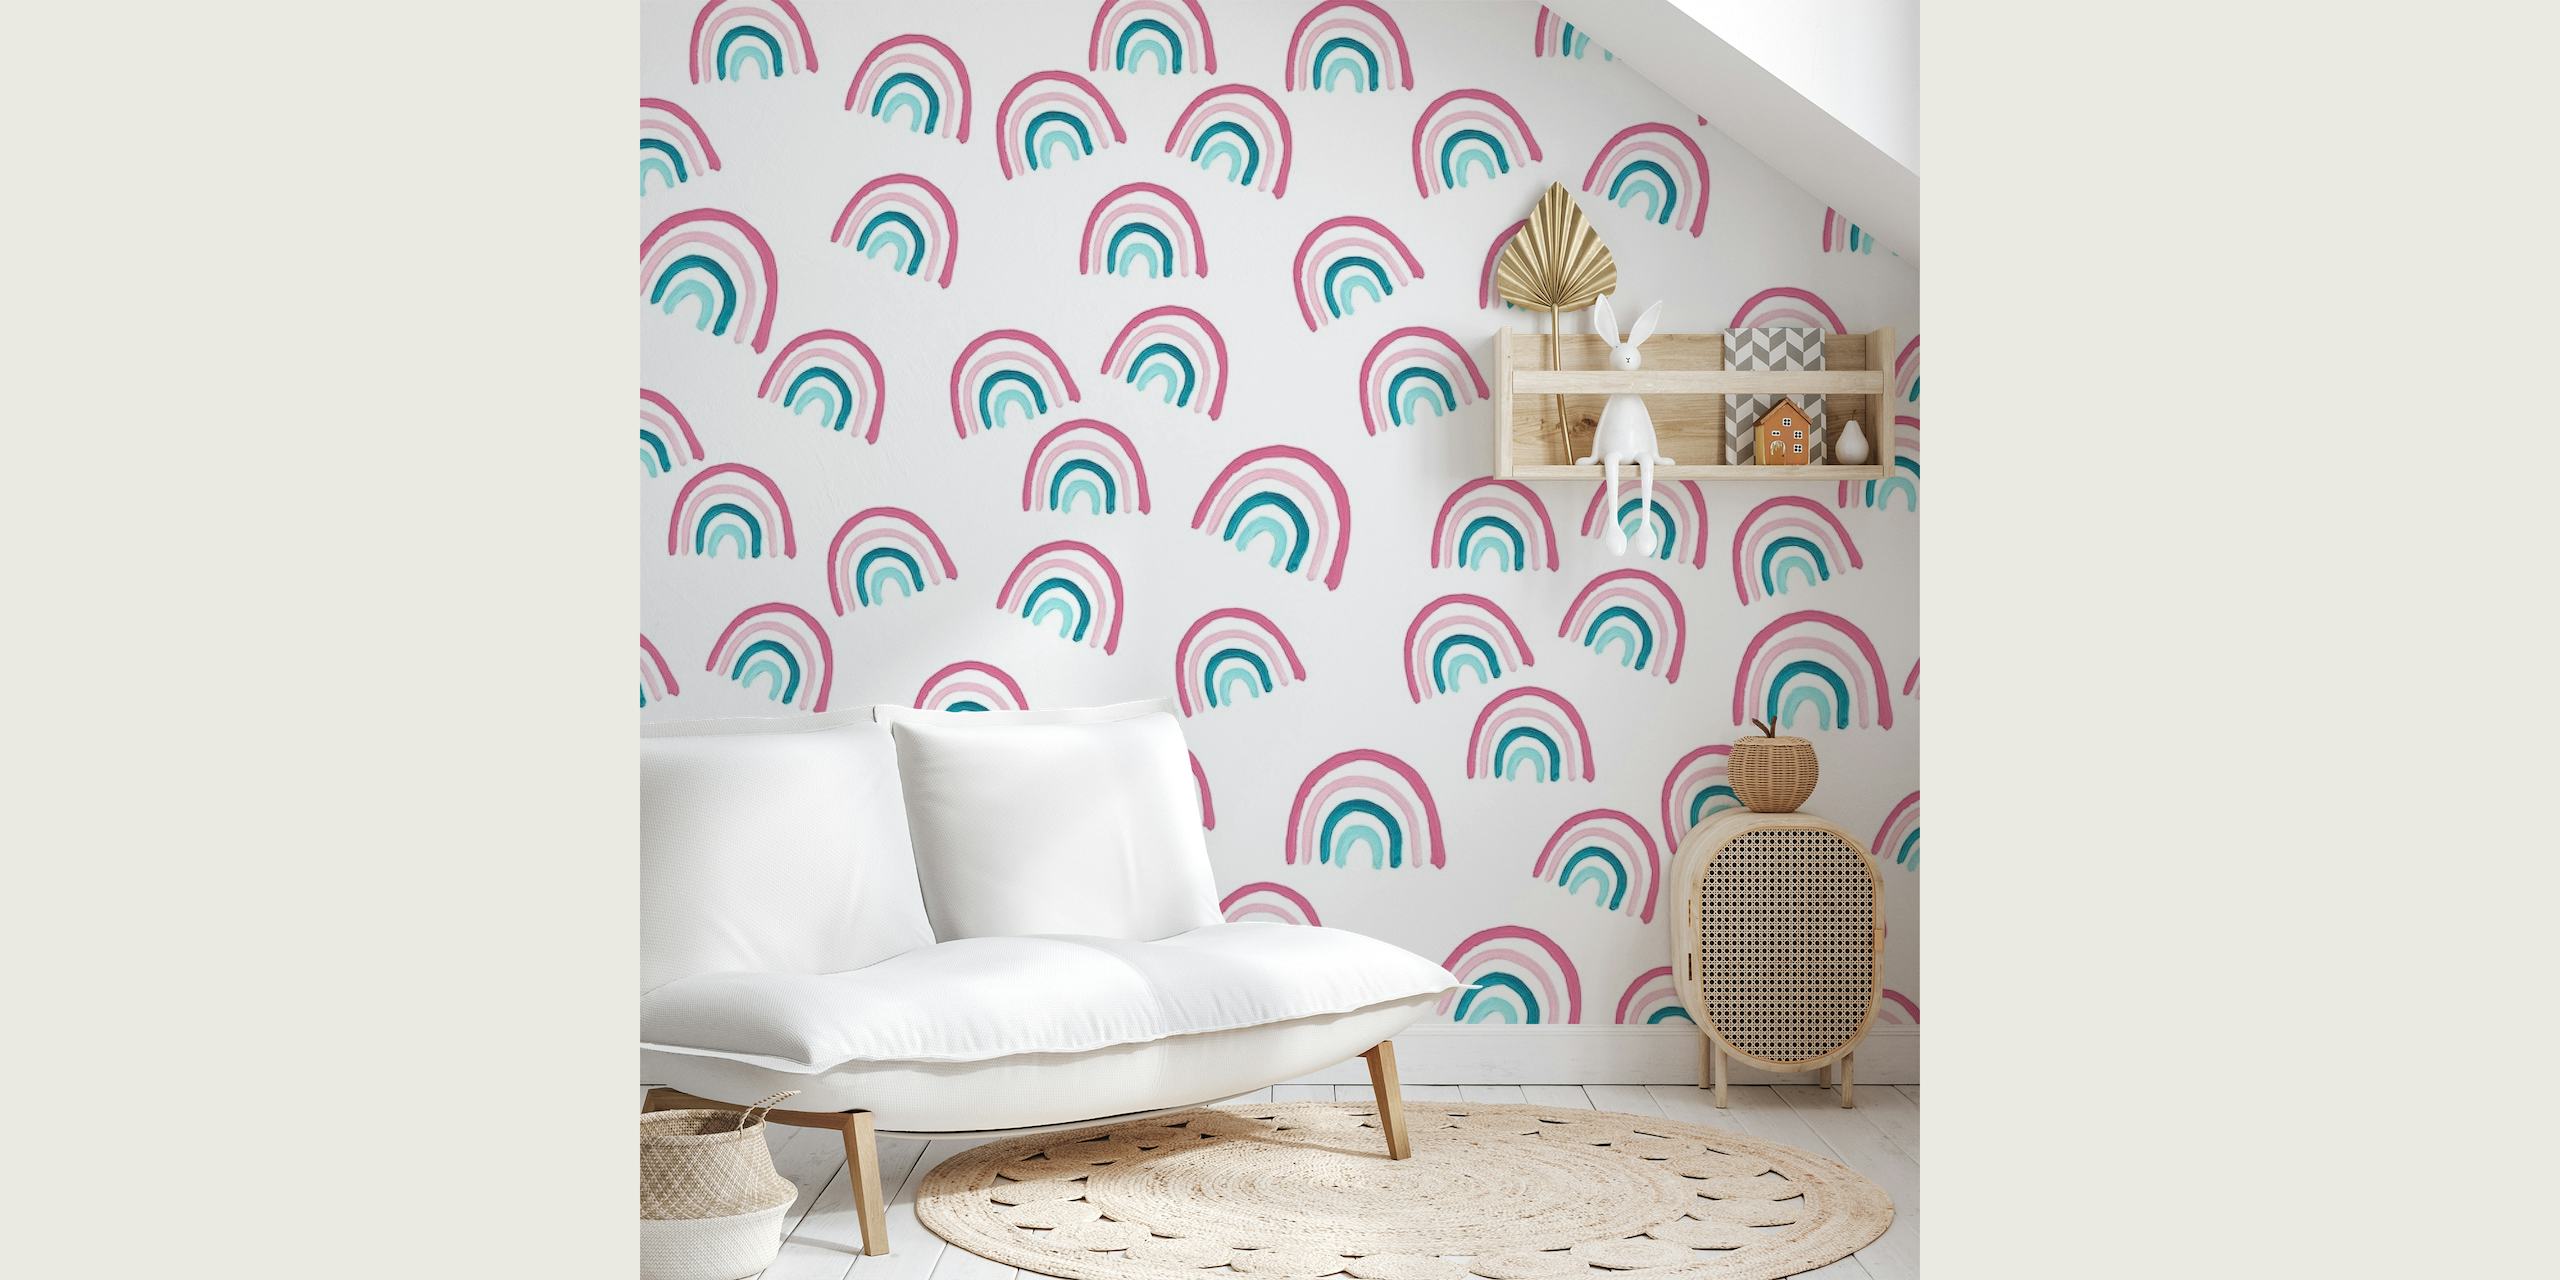 Zidna slika s uzorkom pastelnih duginih boja s nježno ružičastim i plavozelenim tonovima na bijeloj pozadini